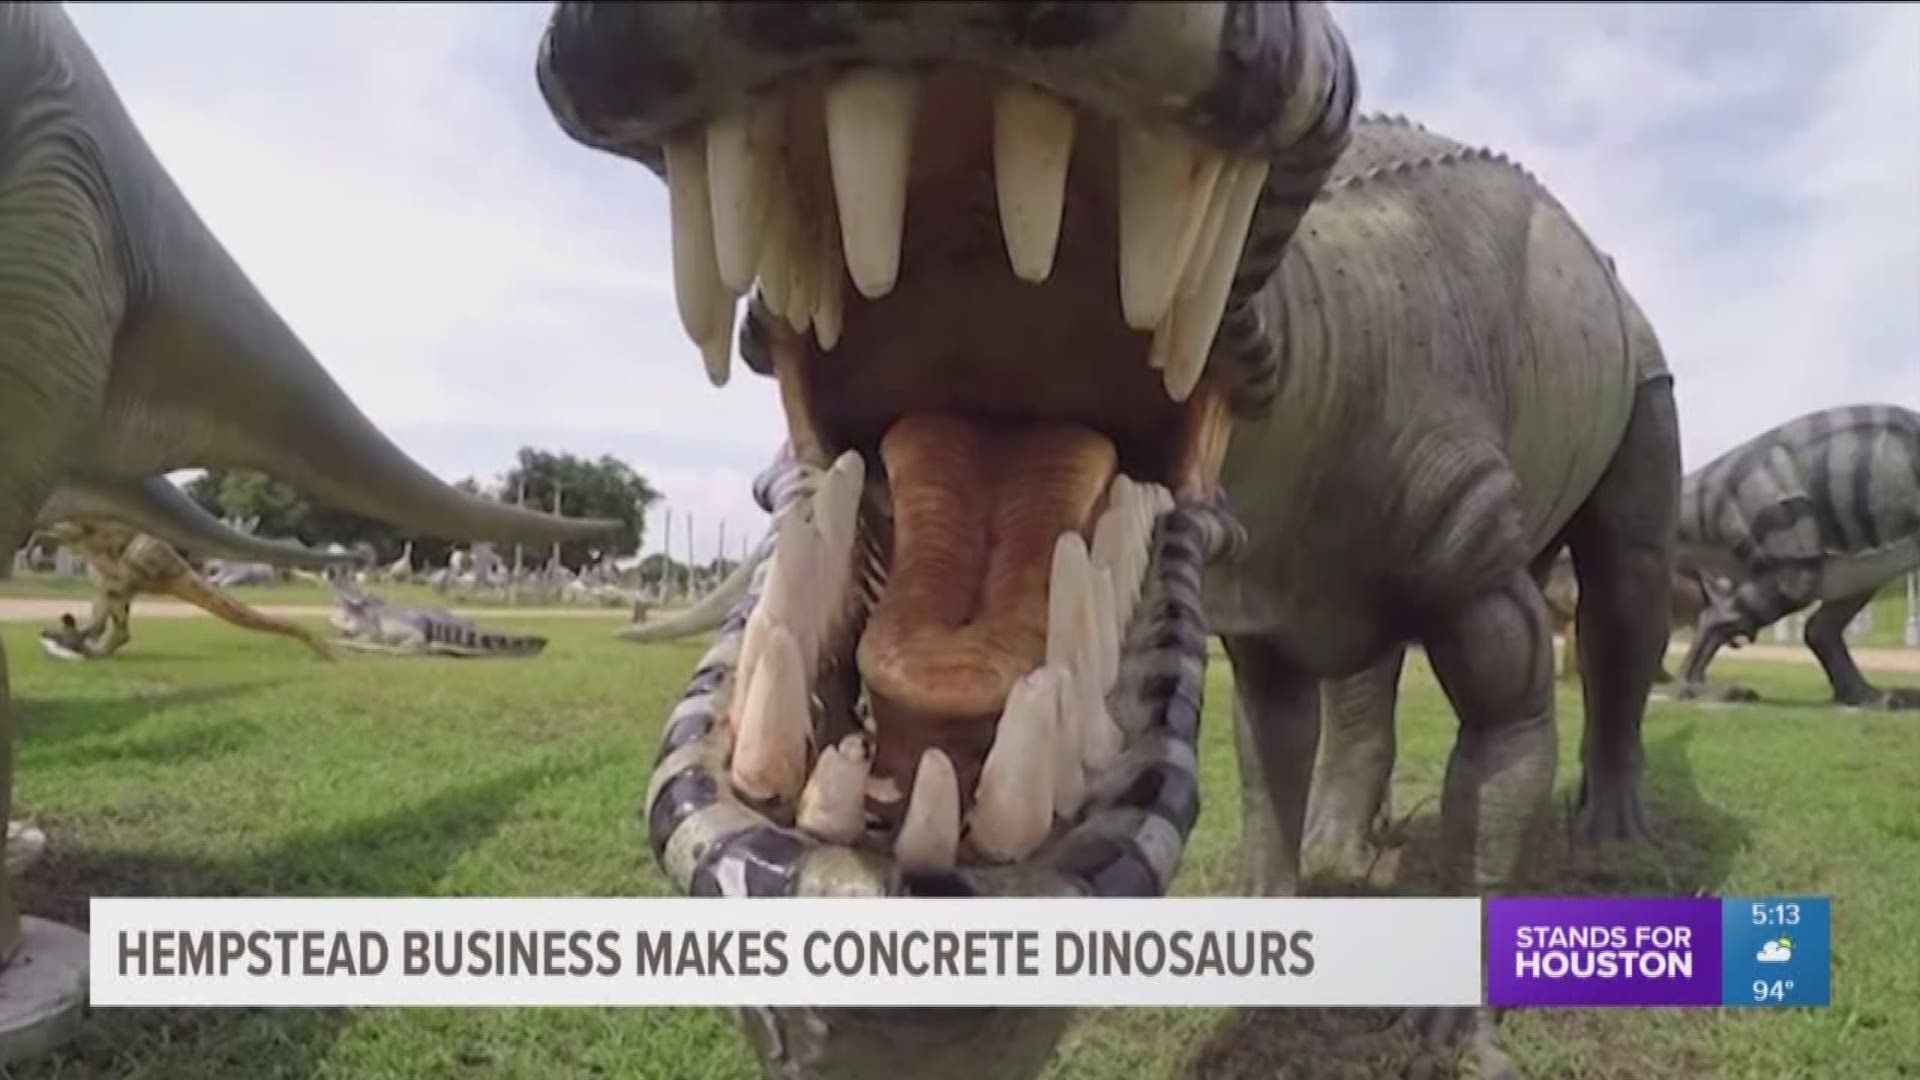 proporcionar club Escultura Giant concrete dinosaurs a BIG hit for Hempstead business | khou.com